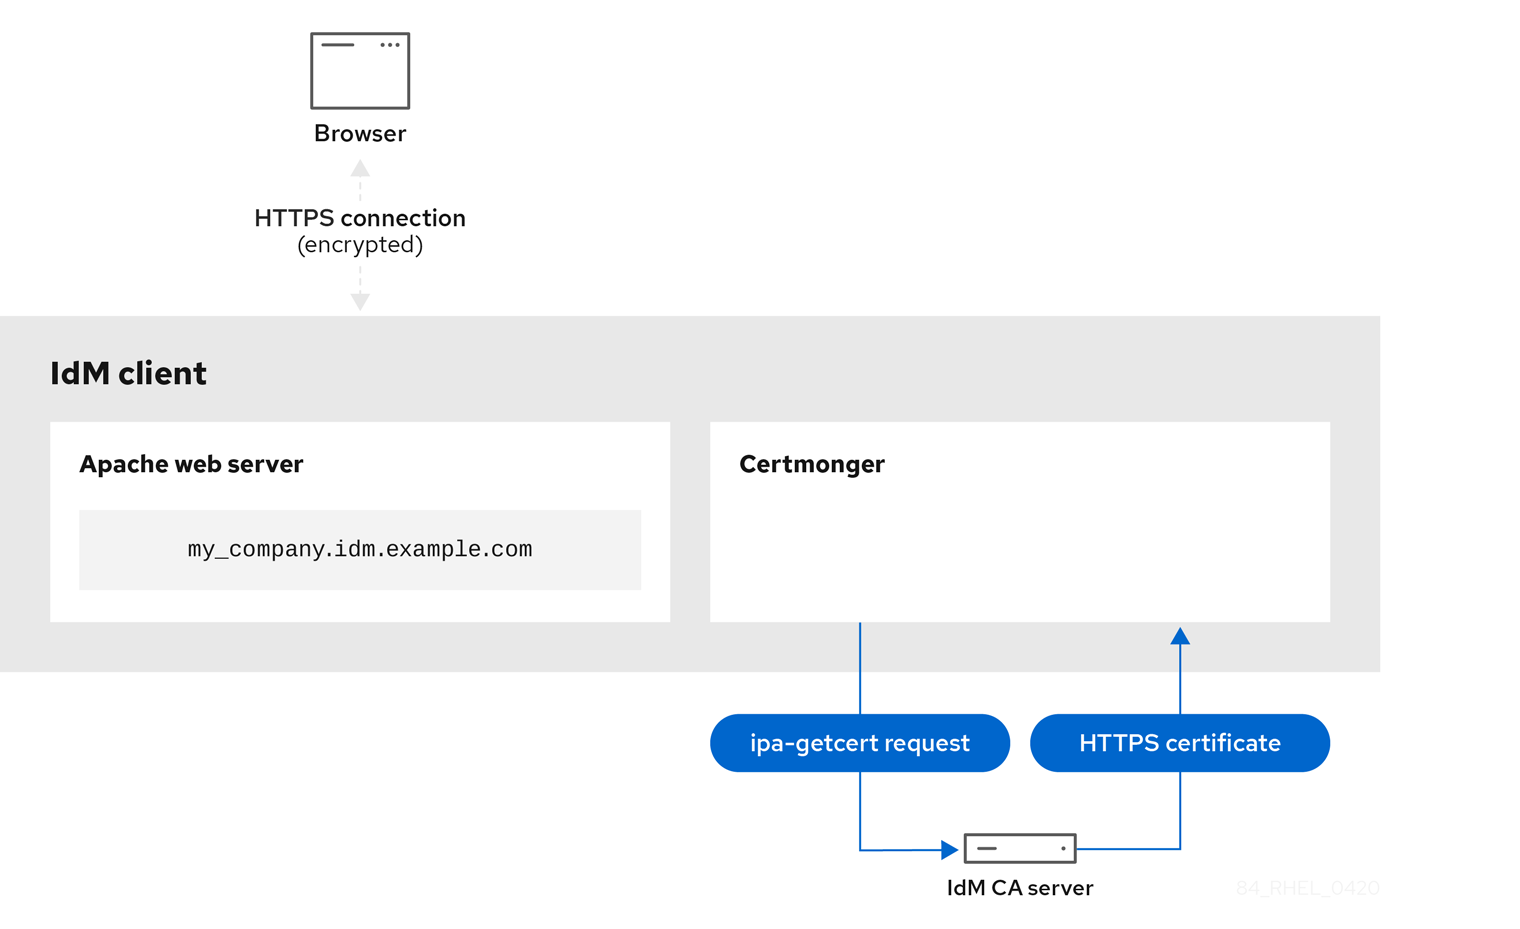 显示一个图表，显示 IdM 客户端上 certmonger 服务中连接 IdM CA 服务器的箭头，以显示它正在执行 ipa-getcert 请求。IdM CA 服务器到 Certmonger 的箭头被标记为 HTTPS 证书，以显示它正在将 HTTPS 证书传输到 certmonger 服务。